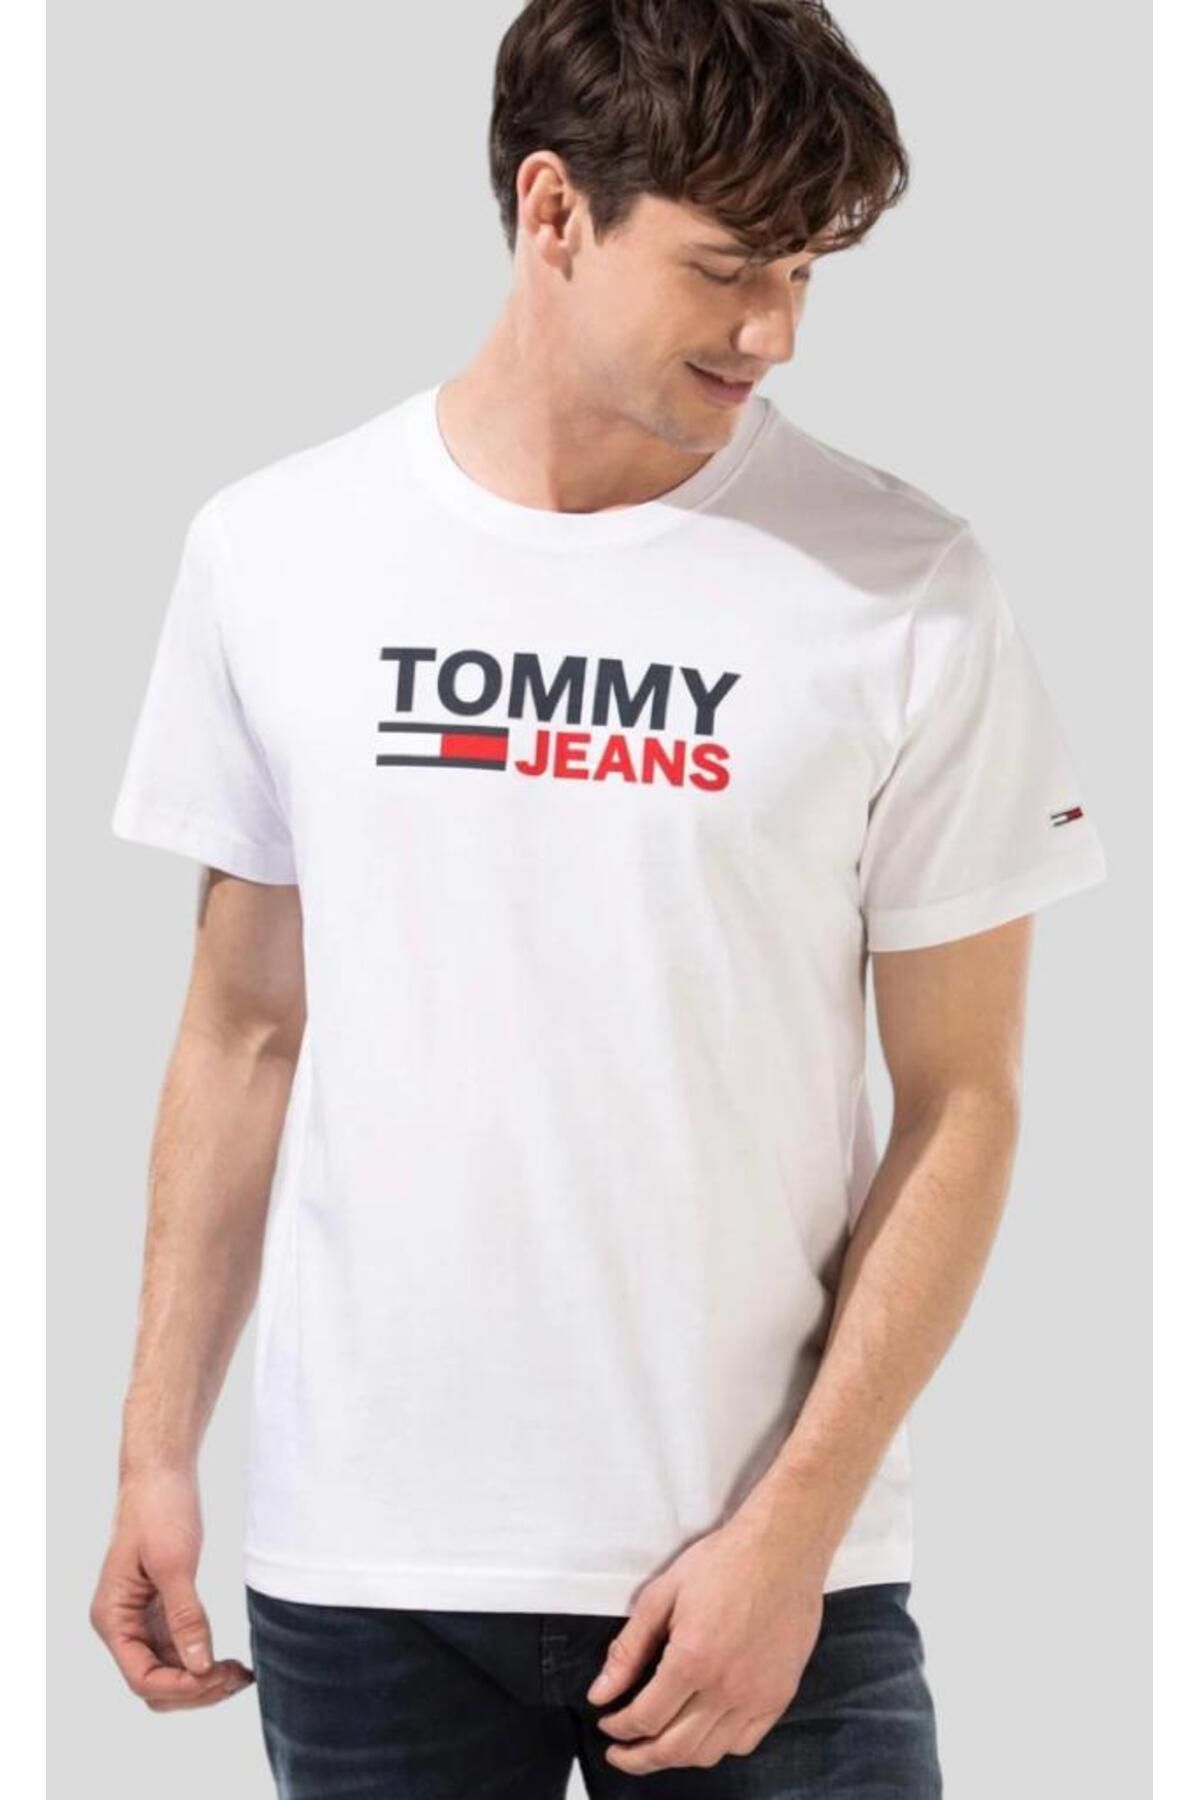 Tommy Hilfiger تی شرت جین تامی ضروری است